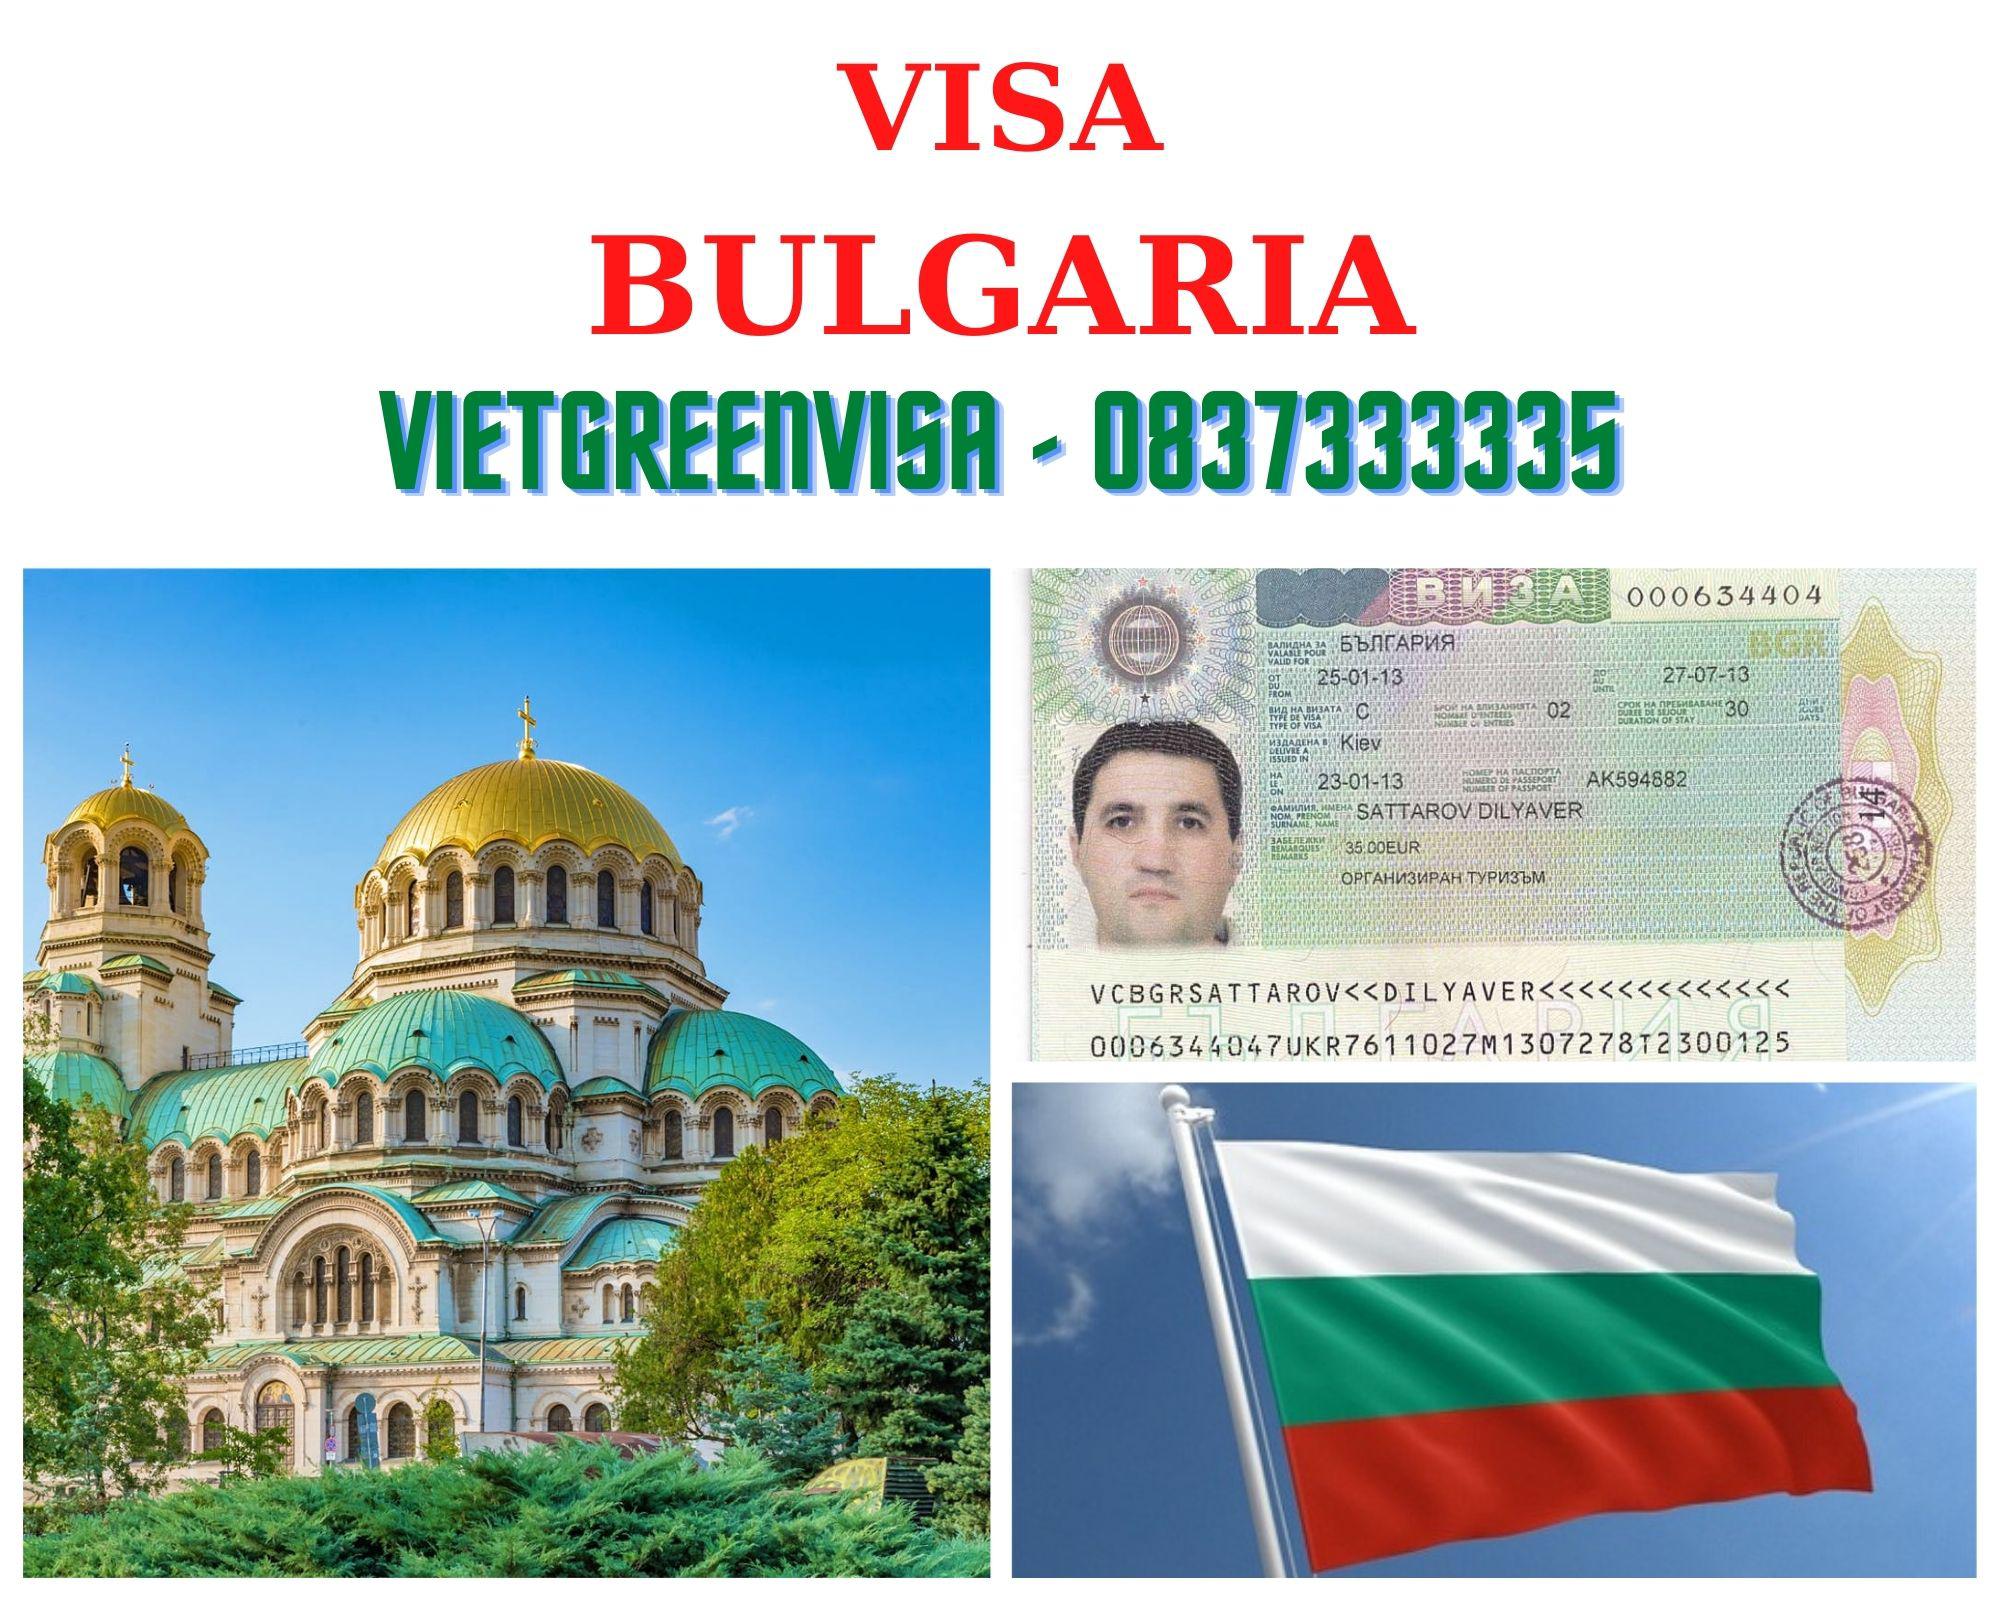 Dịch vụ bảo hiểm du lịch xin visa Bulgaria giá tốt nhất